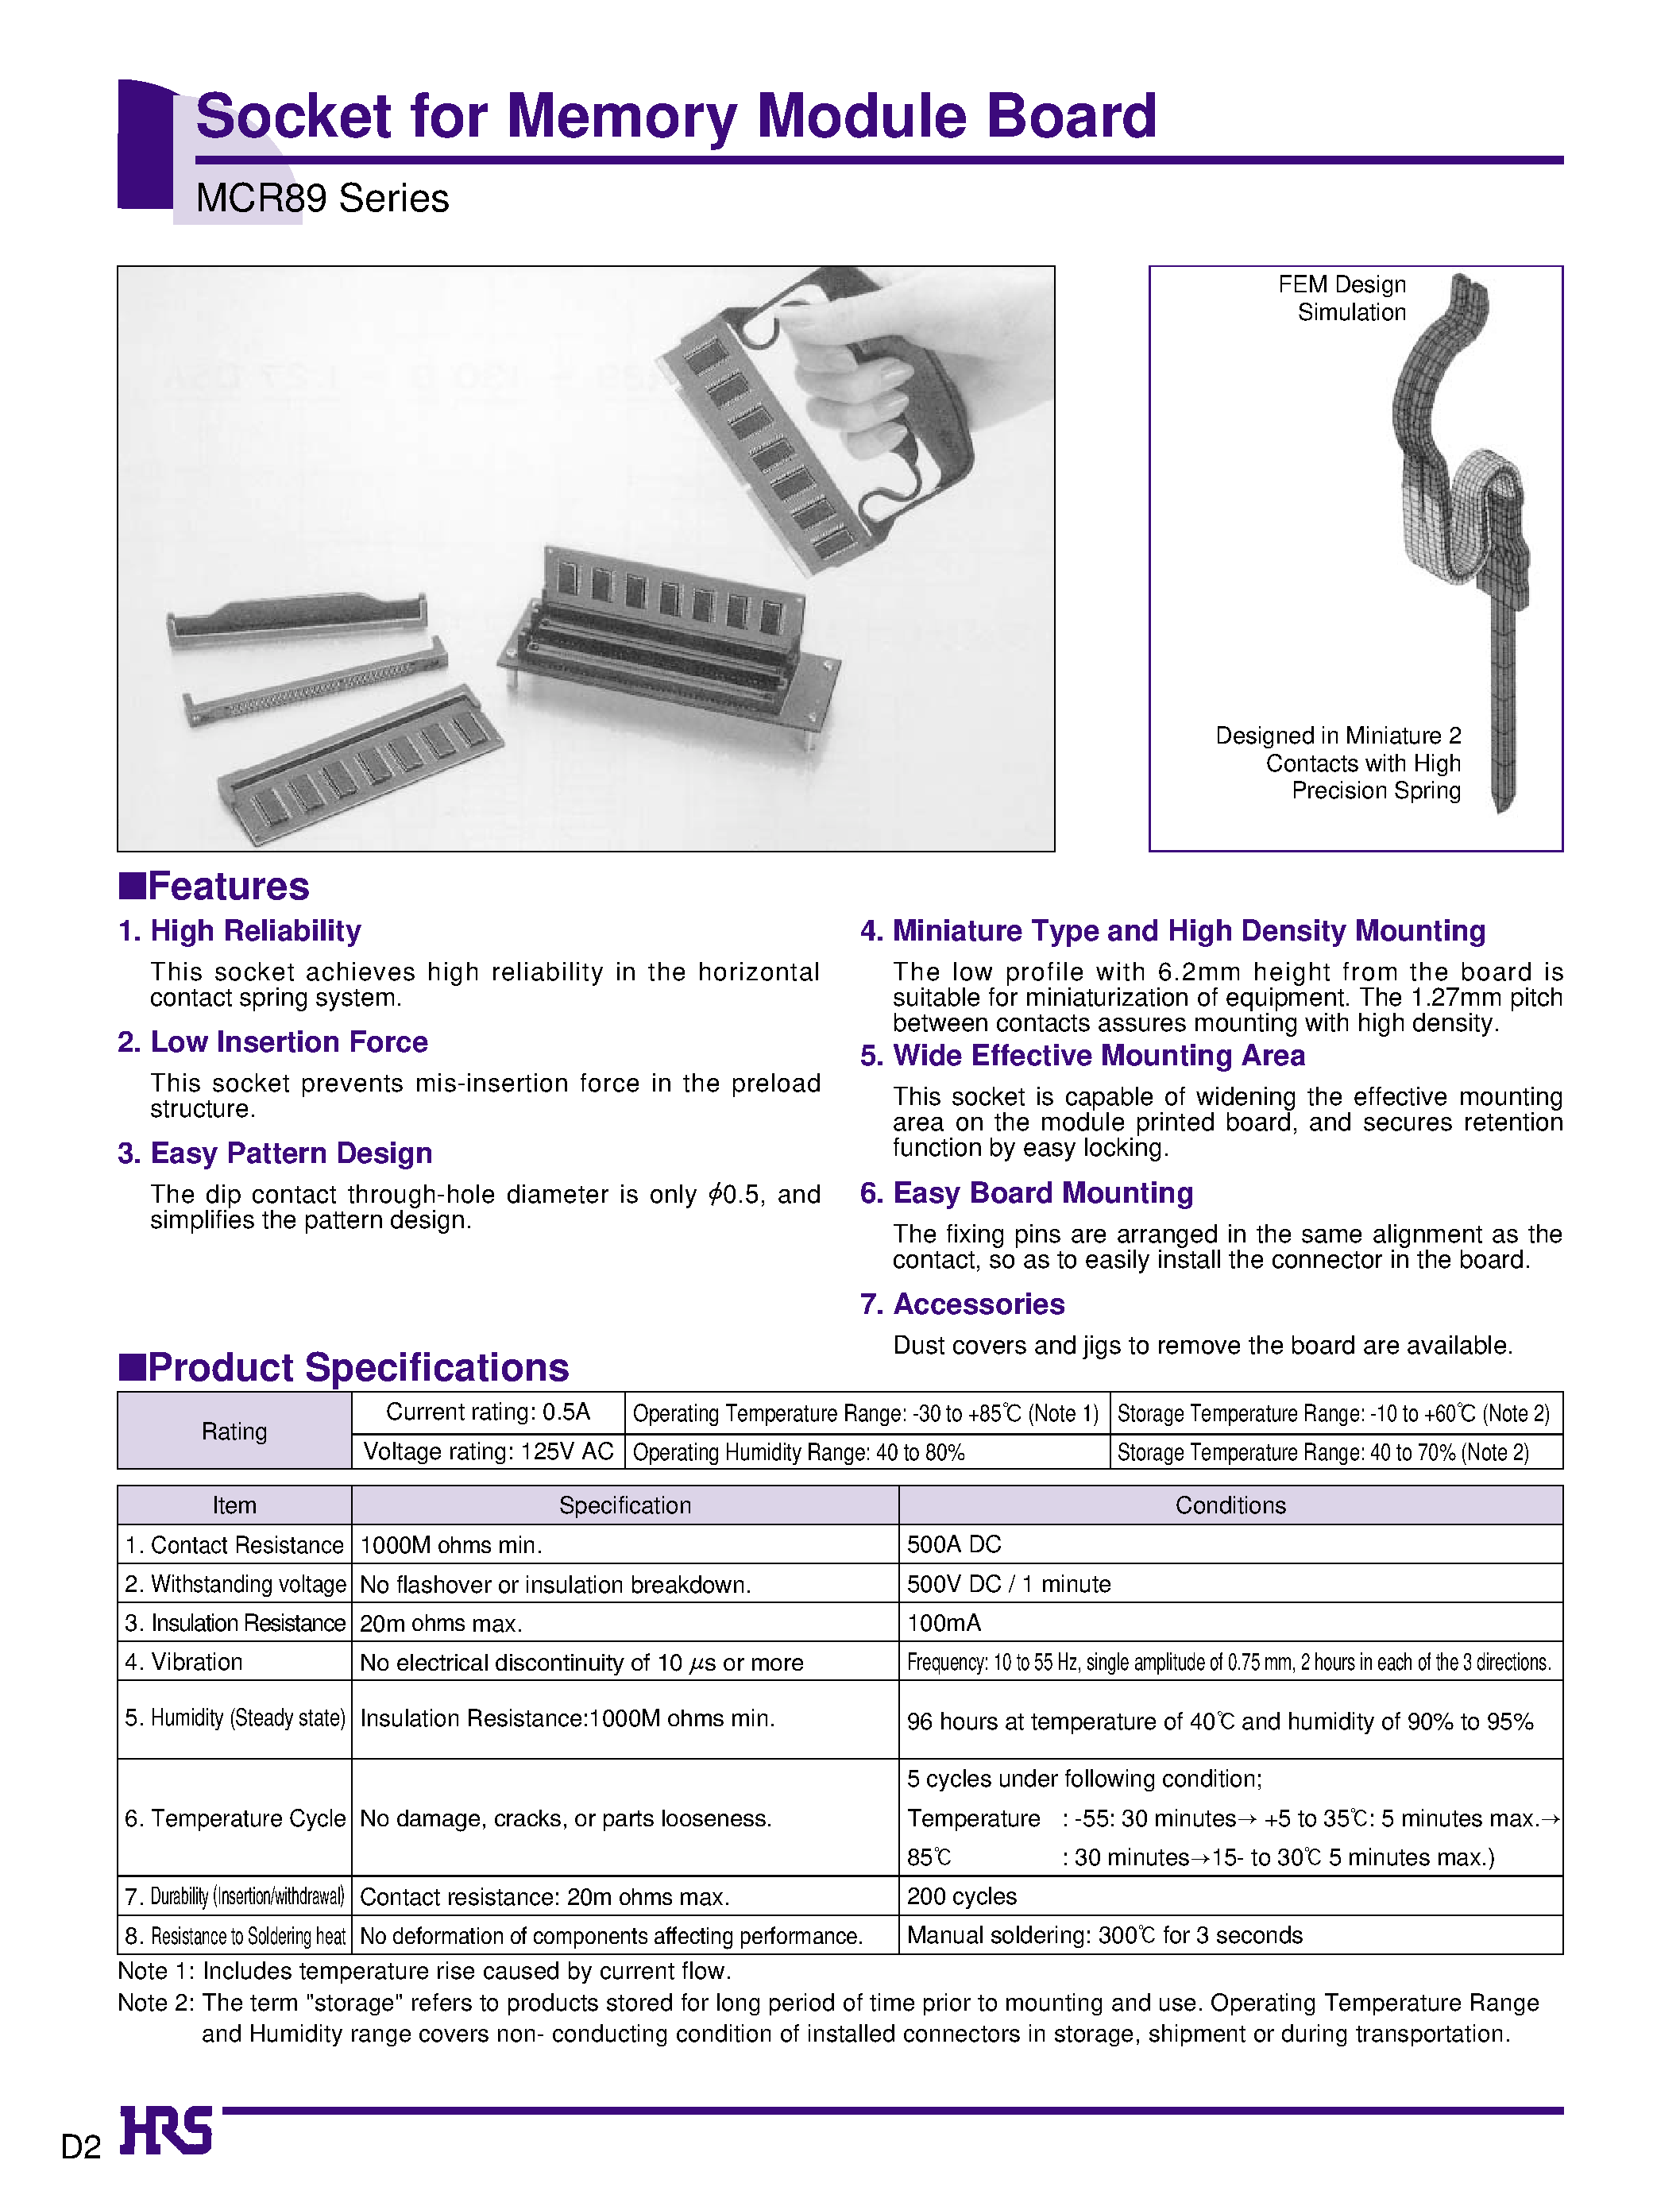 Datasheet MCR89-130D-EJ - Socket for Memory Module Board page 1